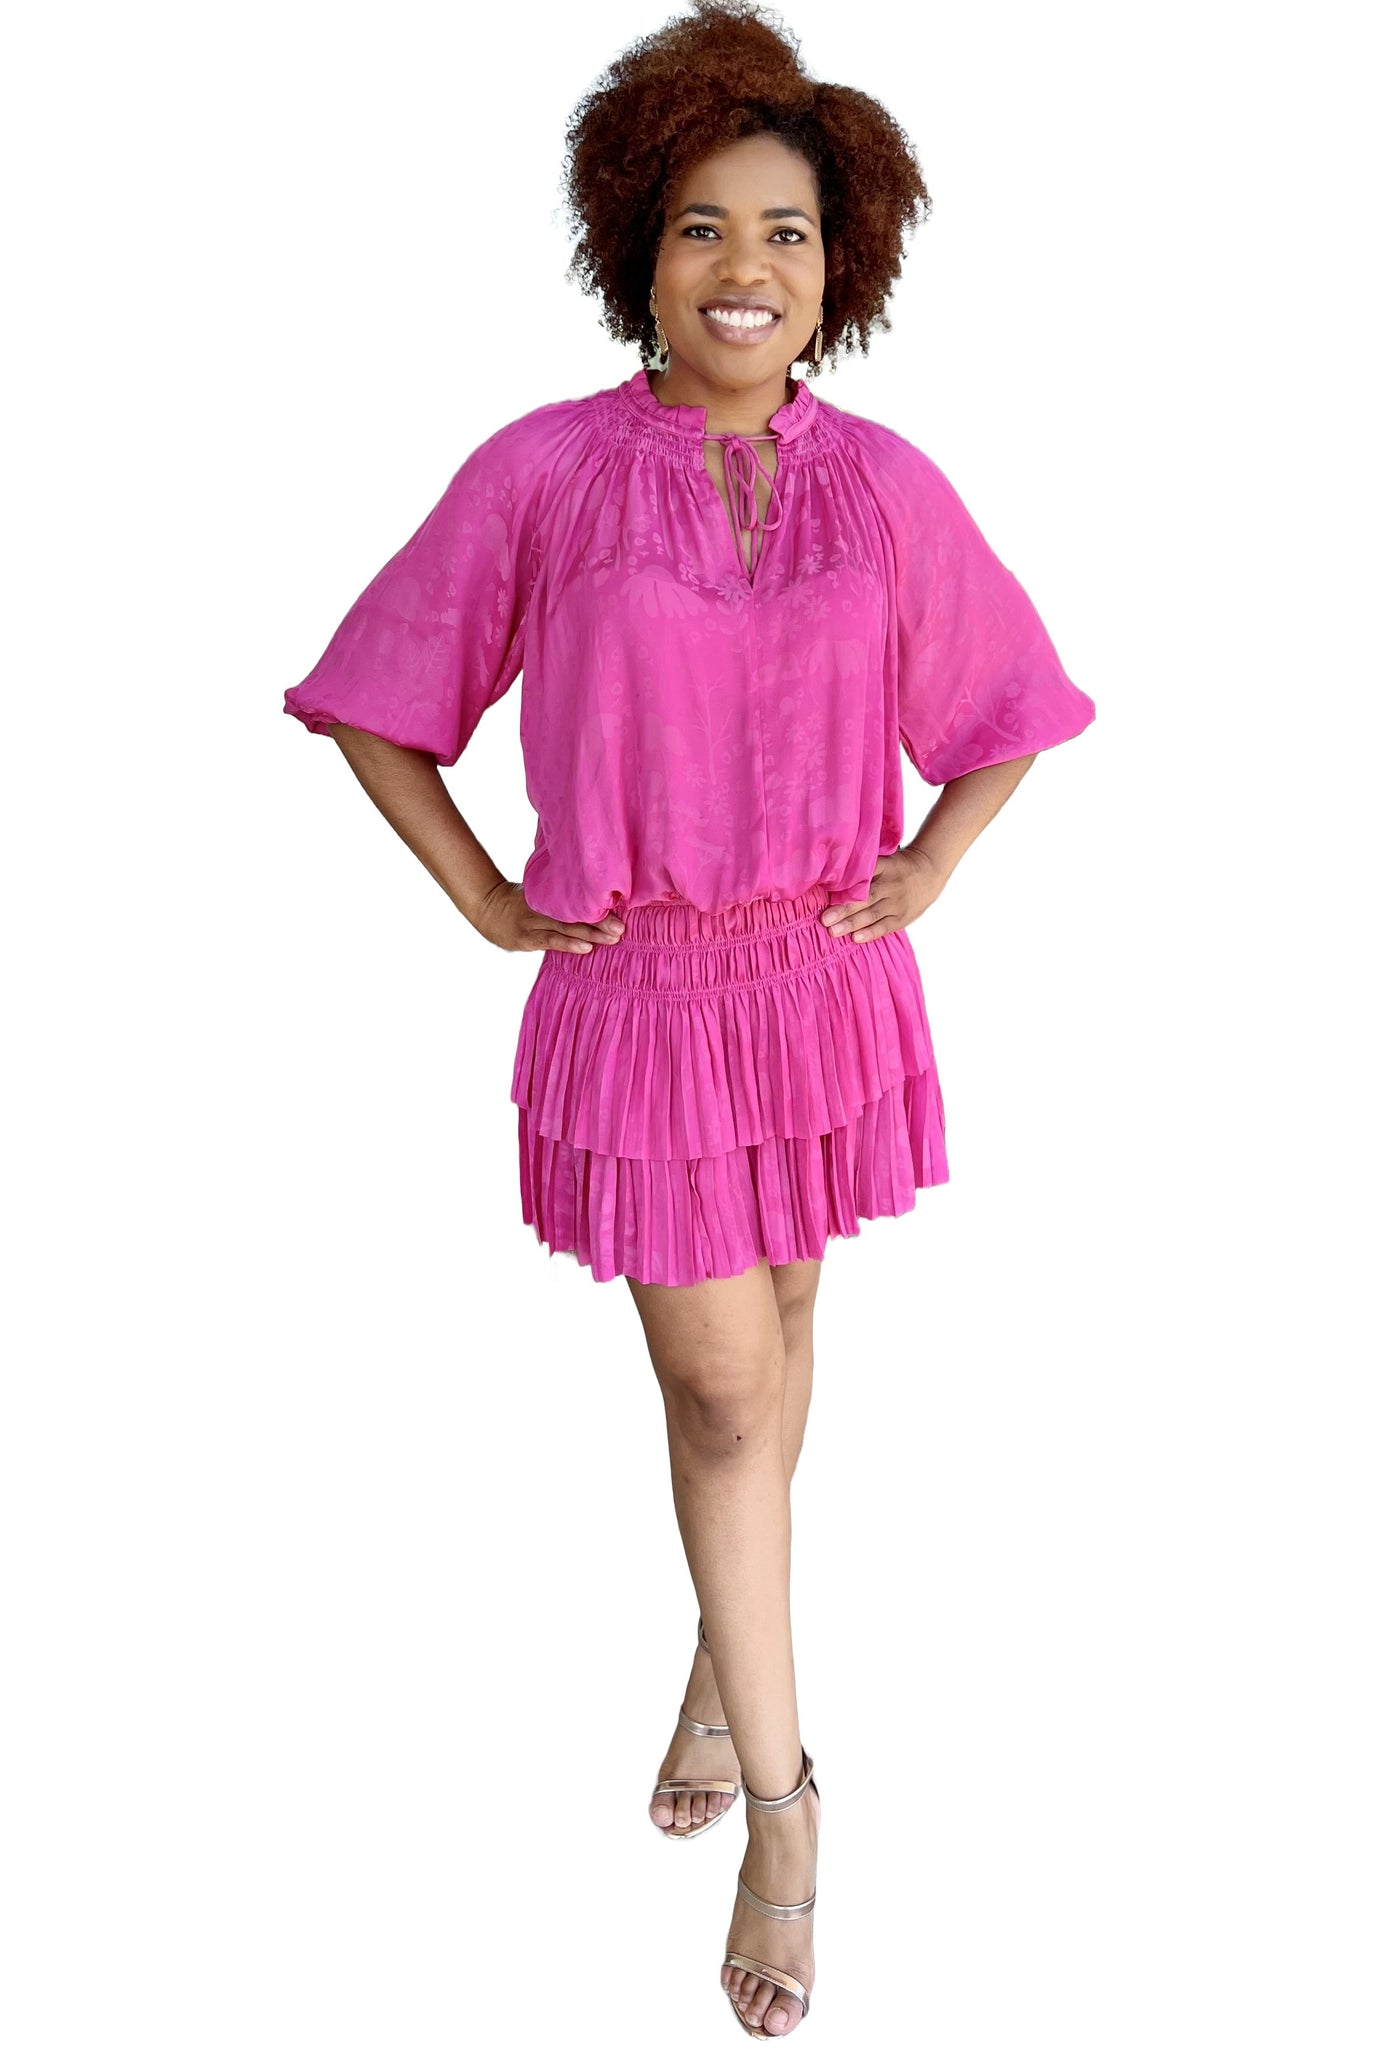 Fun Floral Mini Dress or Tunic - Magenta Pink